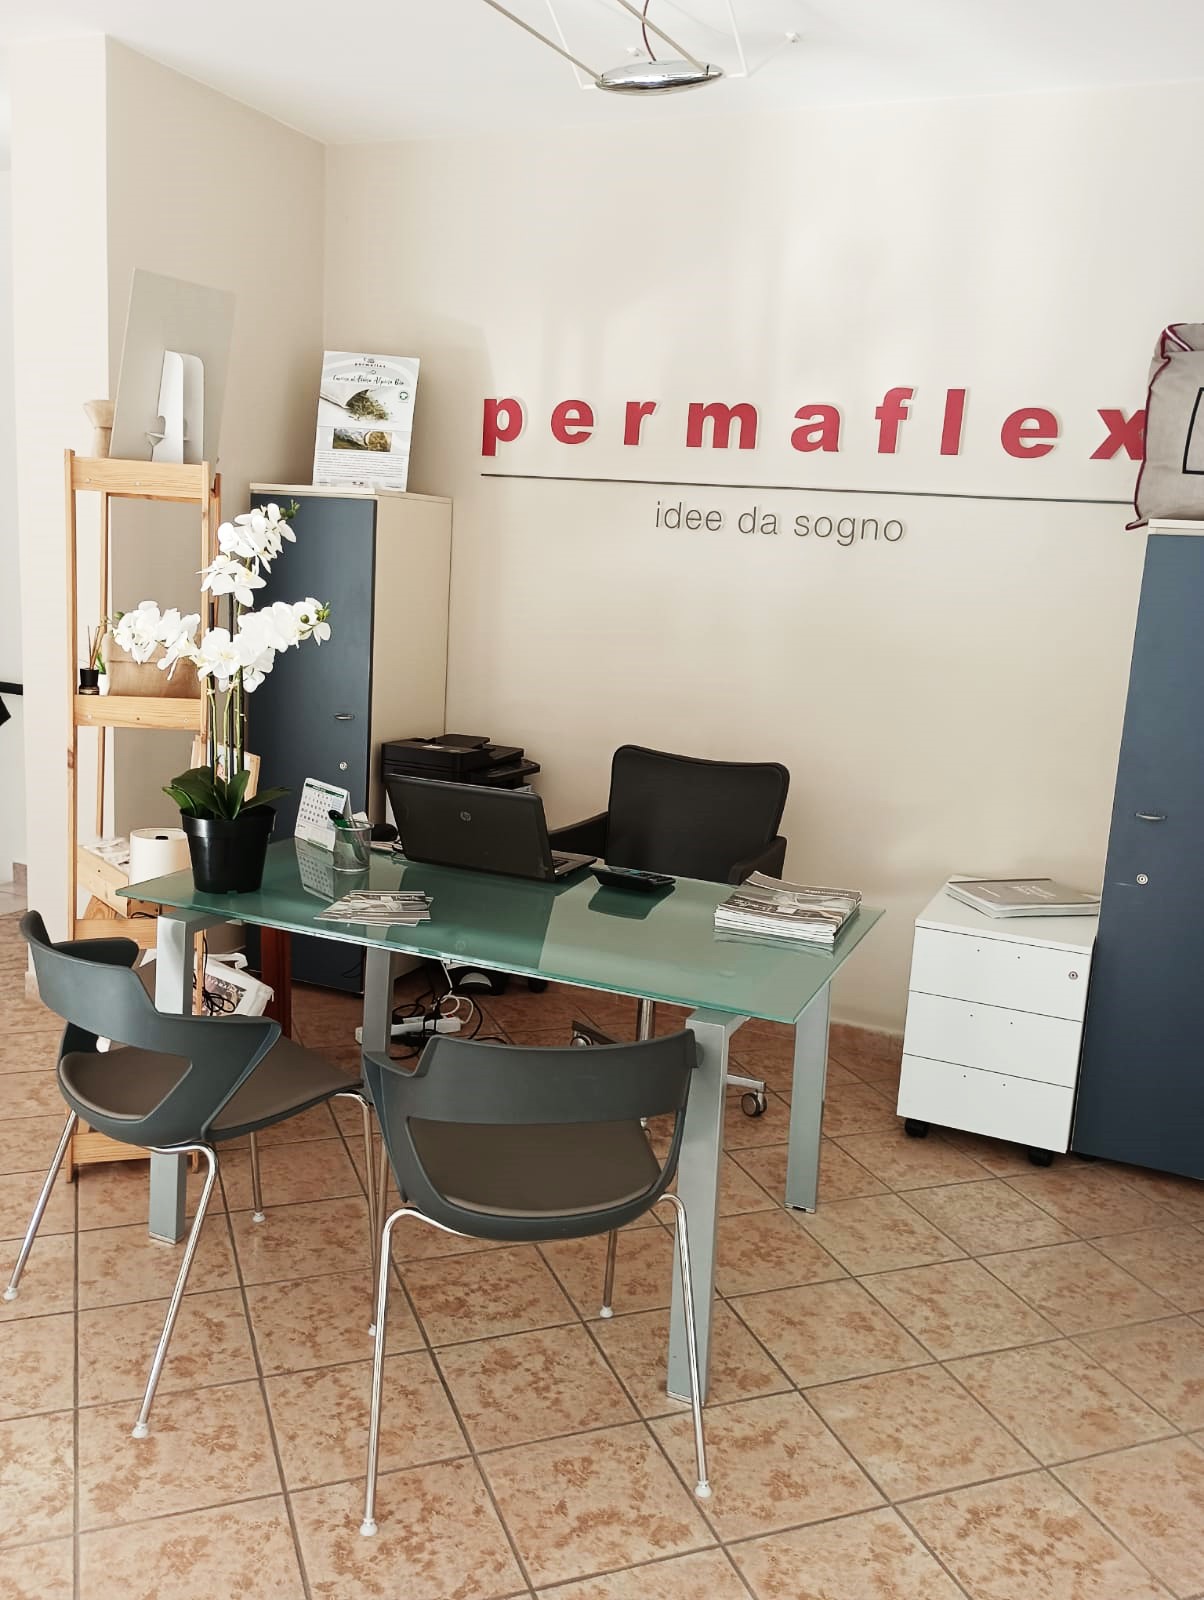 Centro Permaflex Calabria - Centro Permaflex Amantea - Via Vittorio Emanuele 46